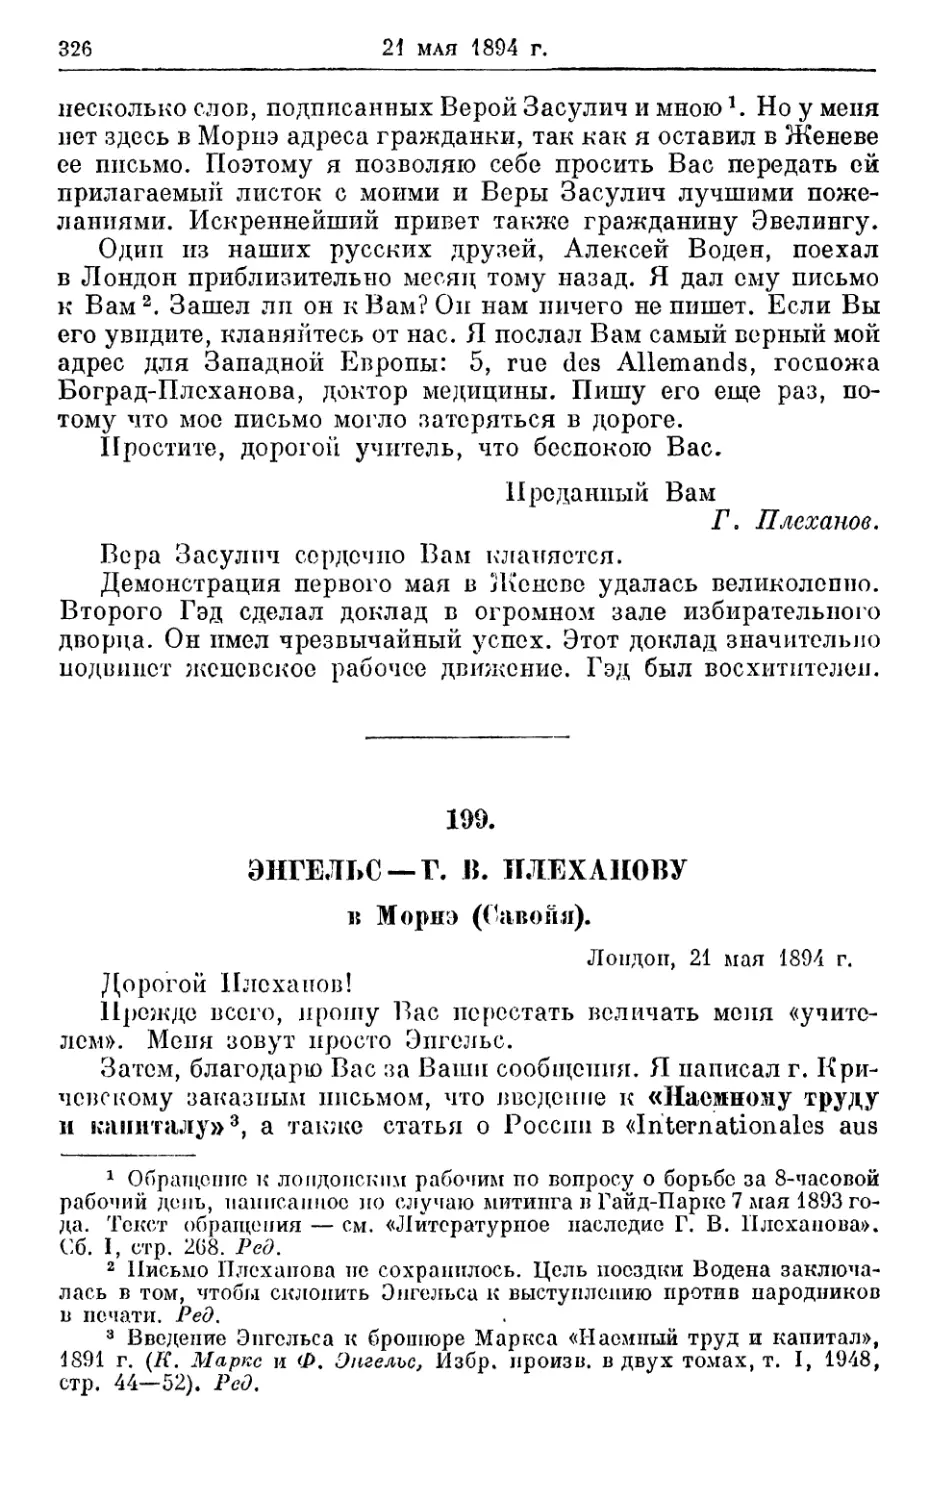 199. Энгельс — Г. В. Плеханову, 21 мая 1894г